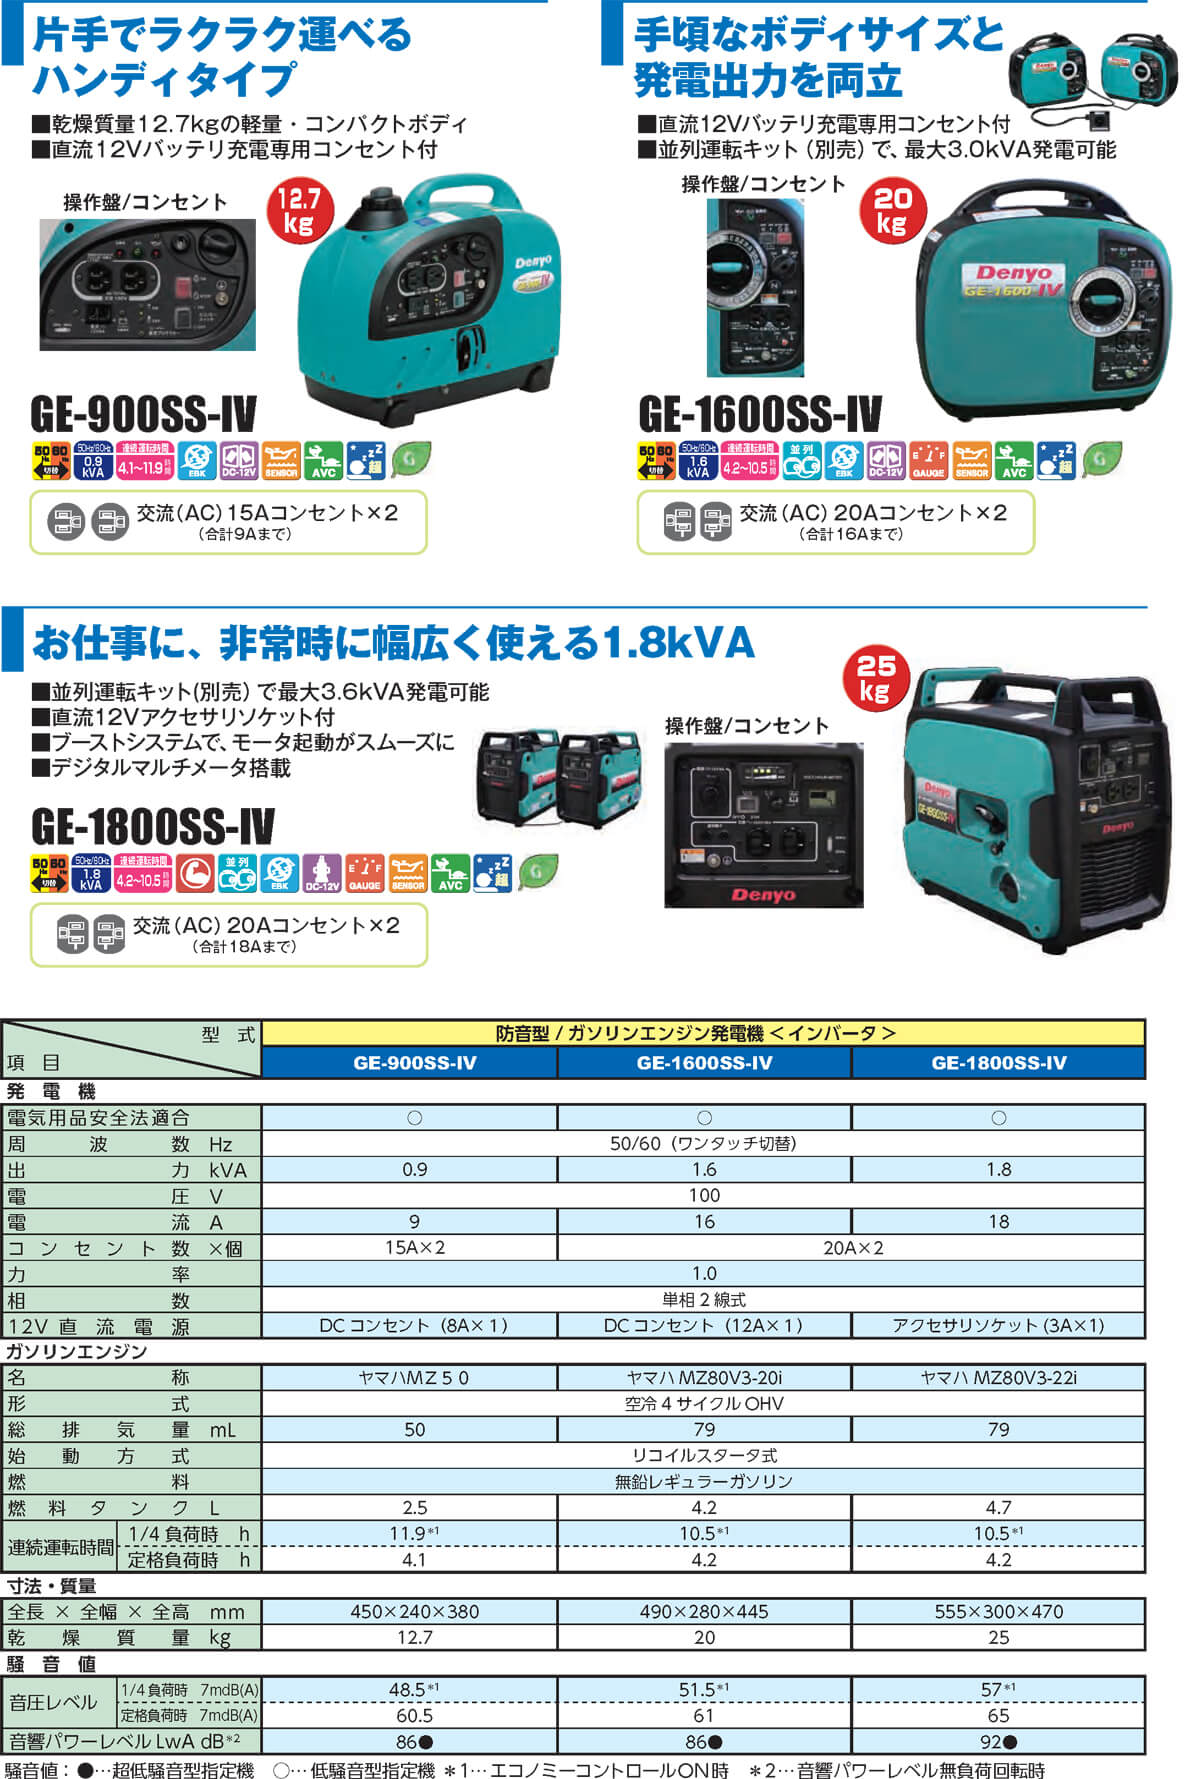 デンヨー GE-1600SS-IV 防音型インバーター発電機(ポータブル) 【数量